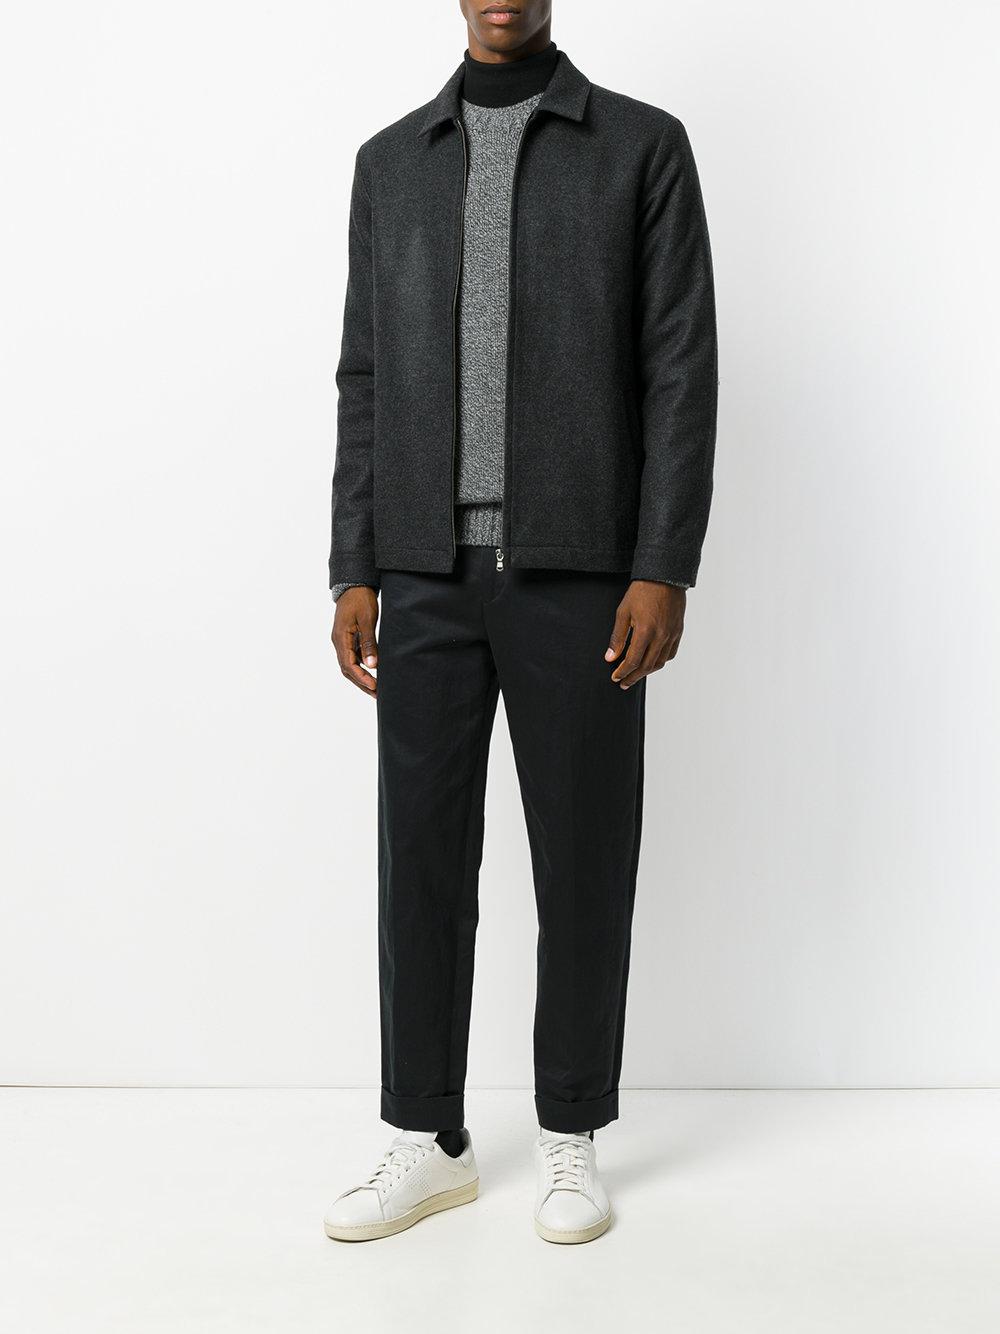 Sunspel Boiled Wool Harrington Jacket in Grey (Gray) for Men - Lyst